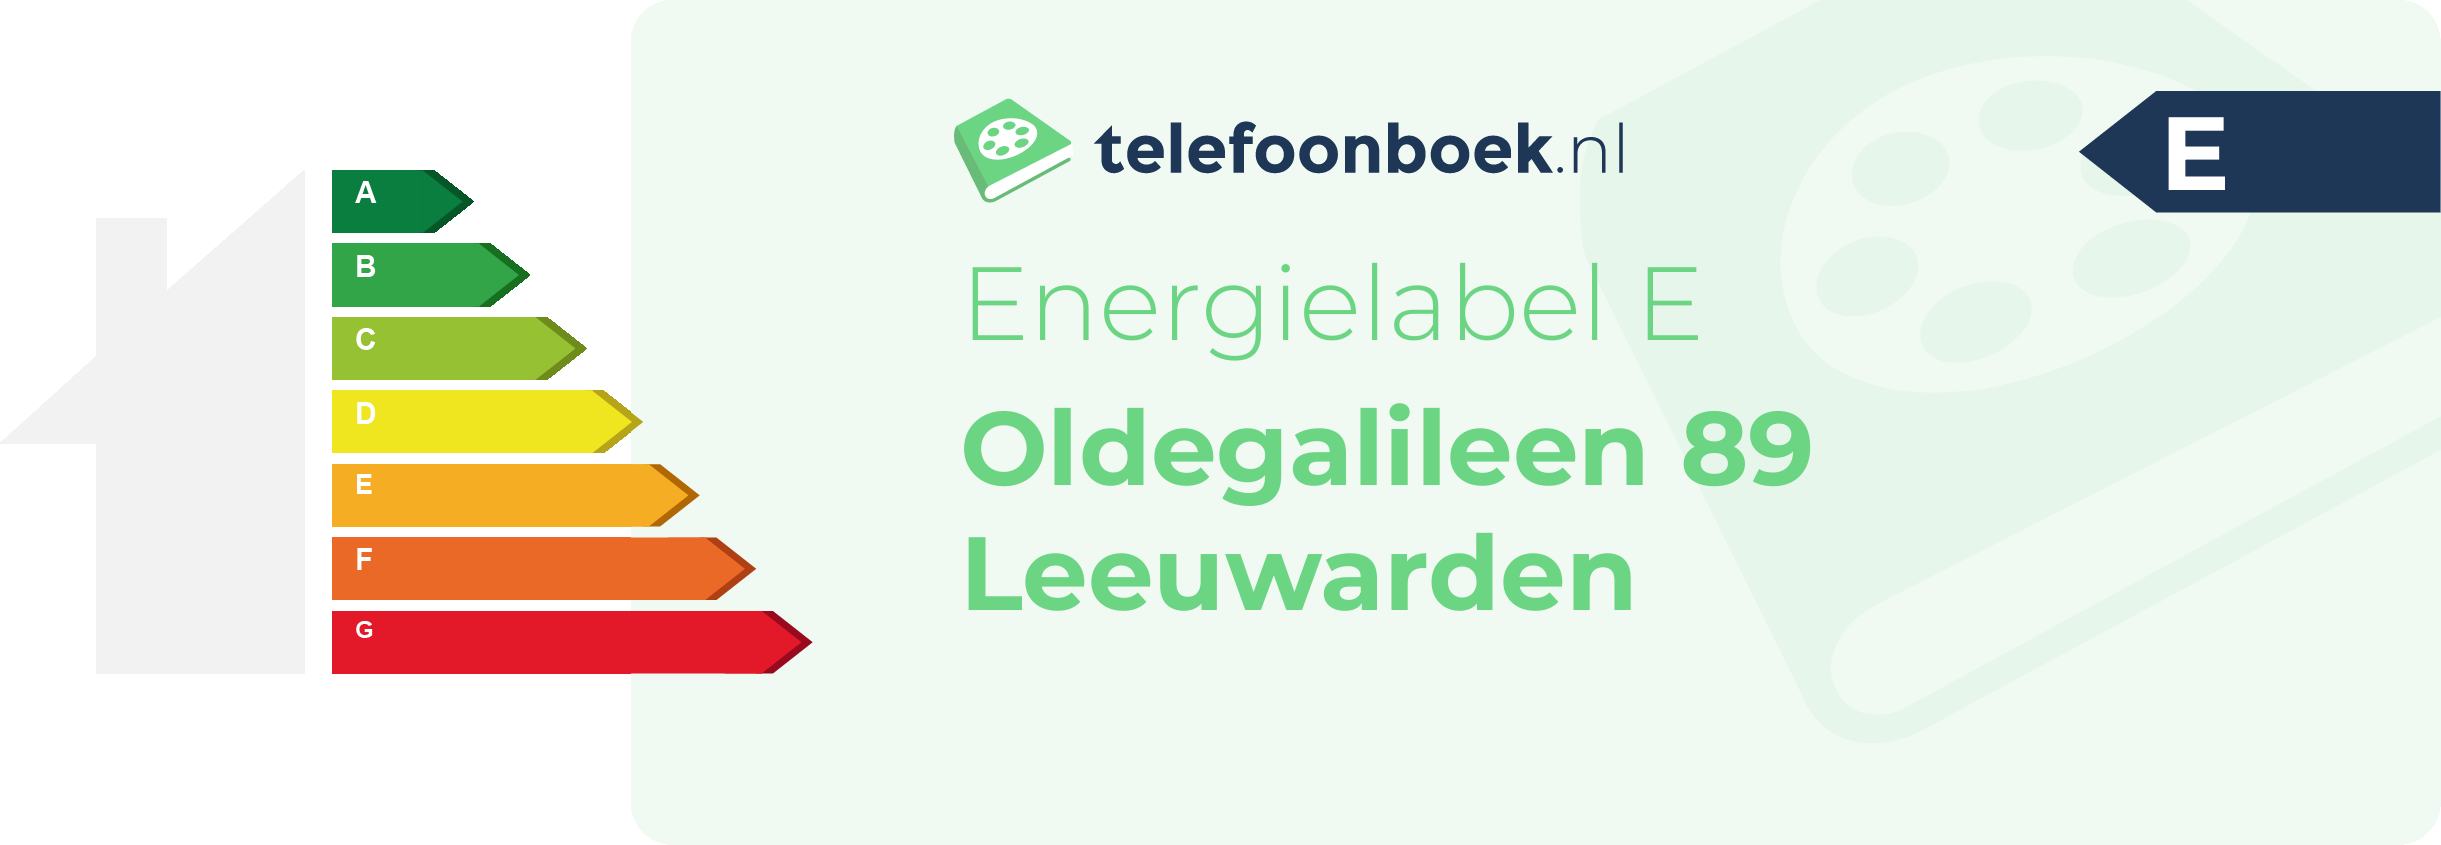 Energielabel Oldegalileen 89 Leeuwarden